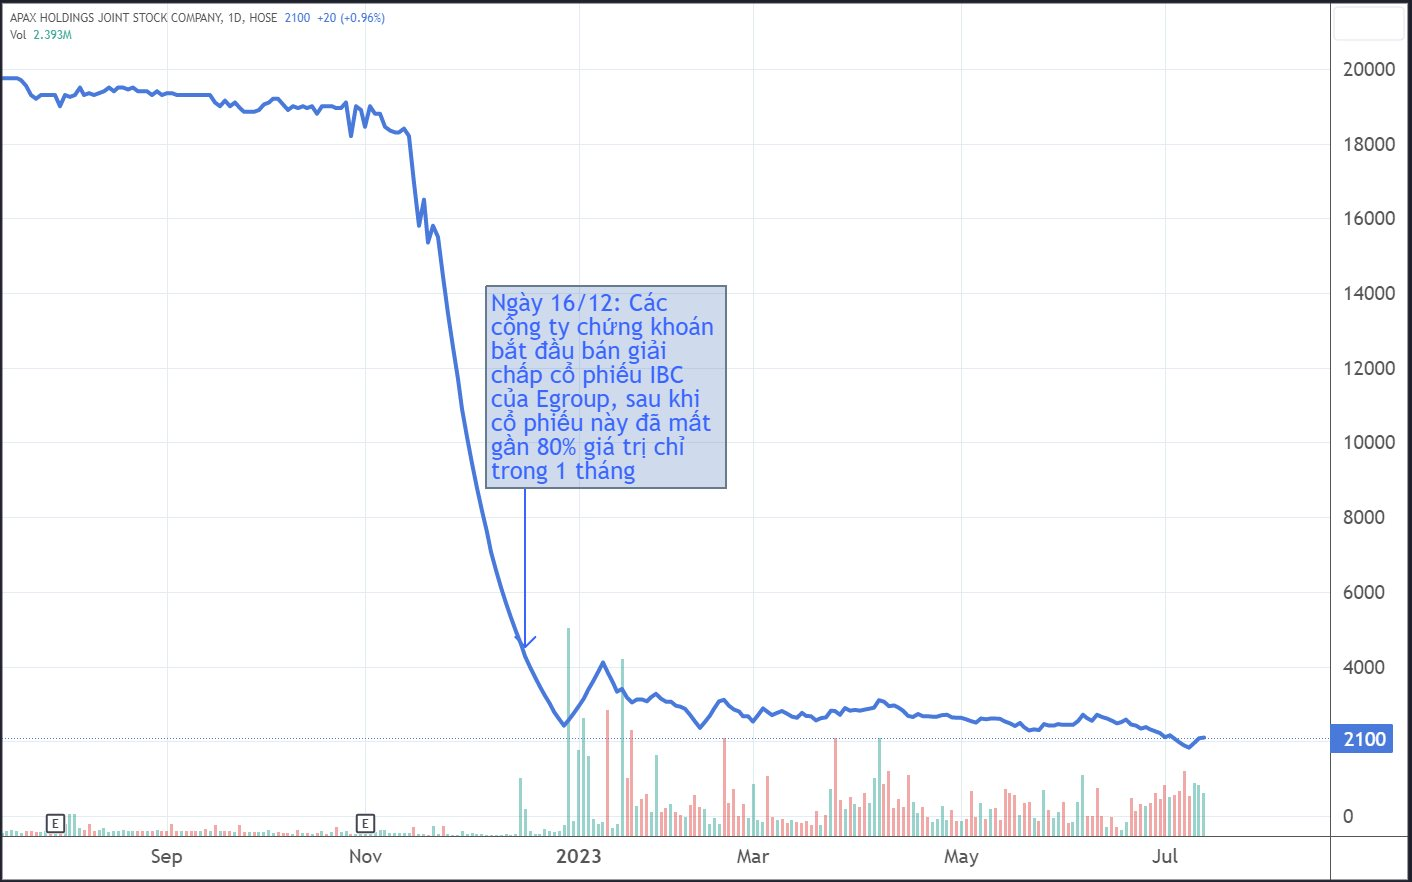 Trải qua hơn 200 ngày giải chấp, Egroup của Shark Thủy đã bị bán bao nhiêu cổ phiếu tại Apax Holdings? - Ảnh 2.